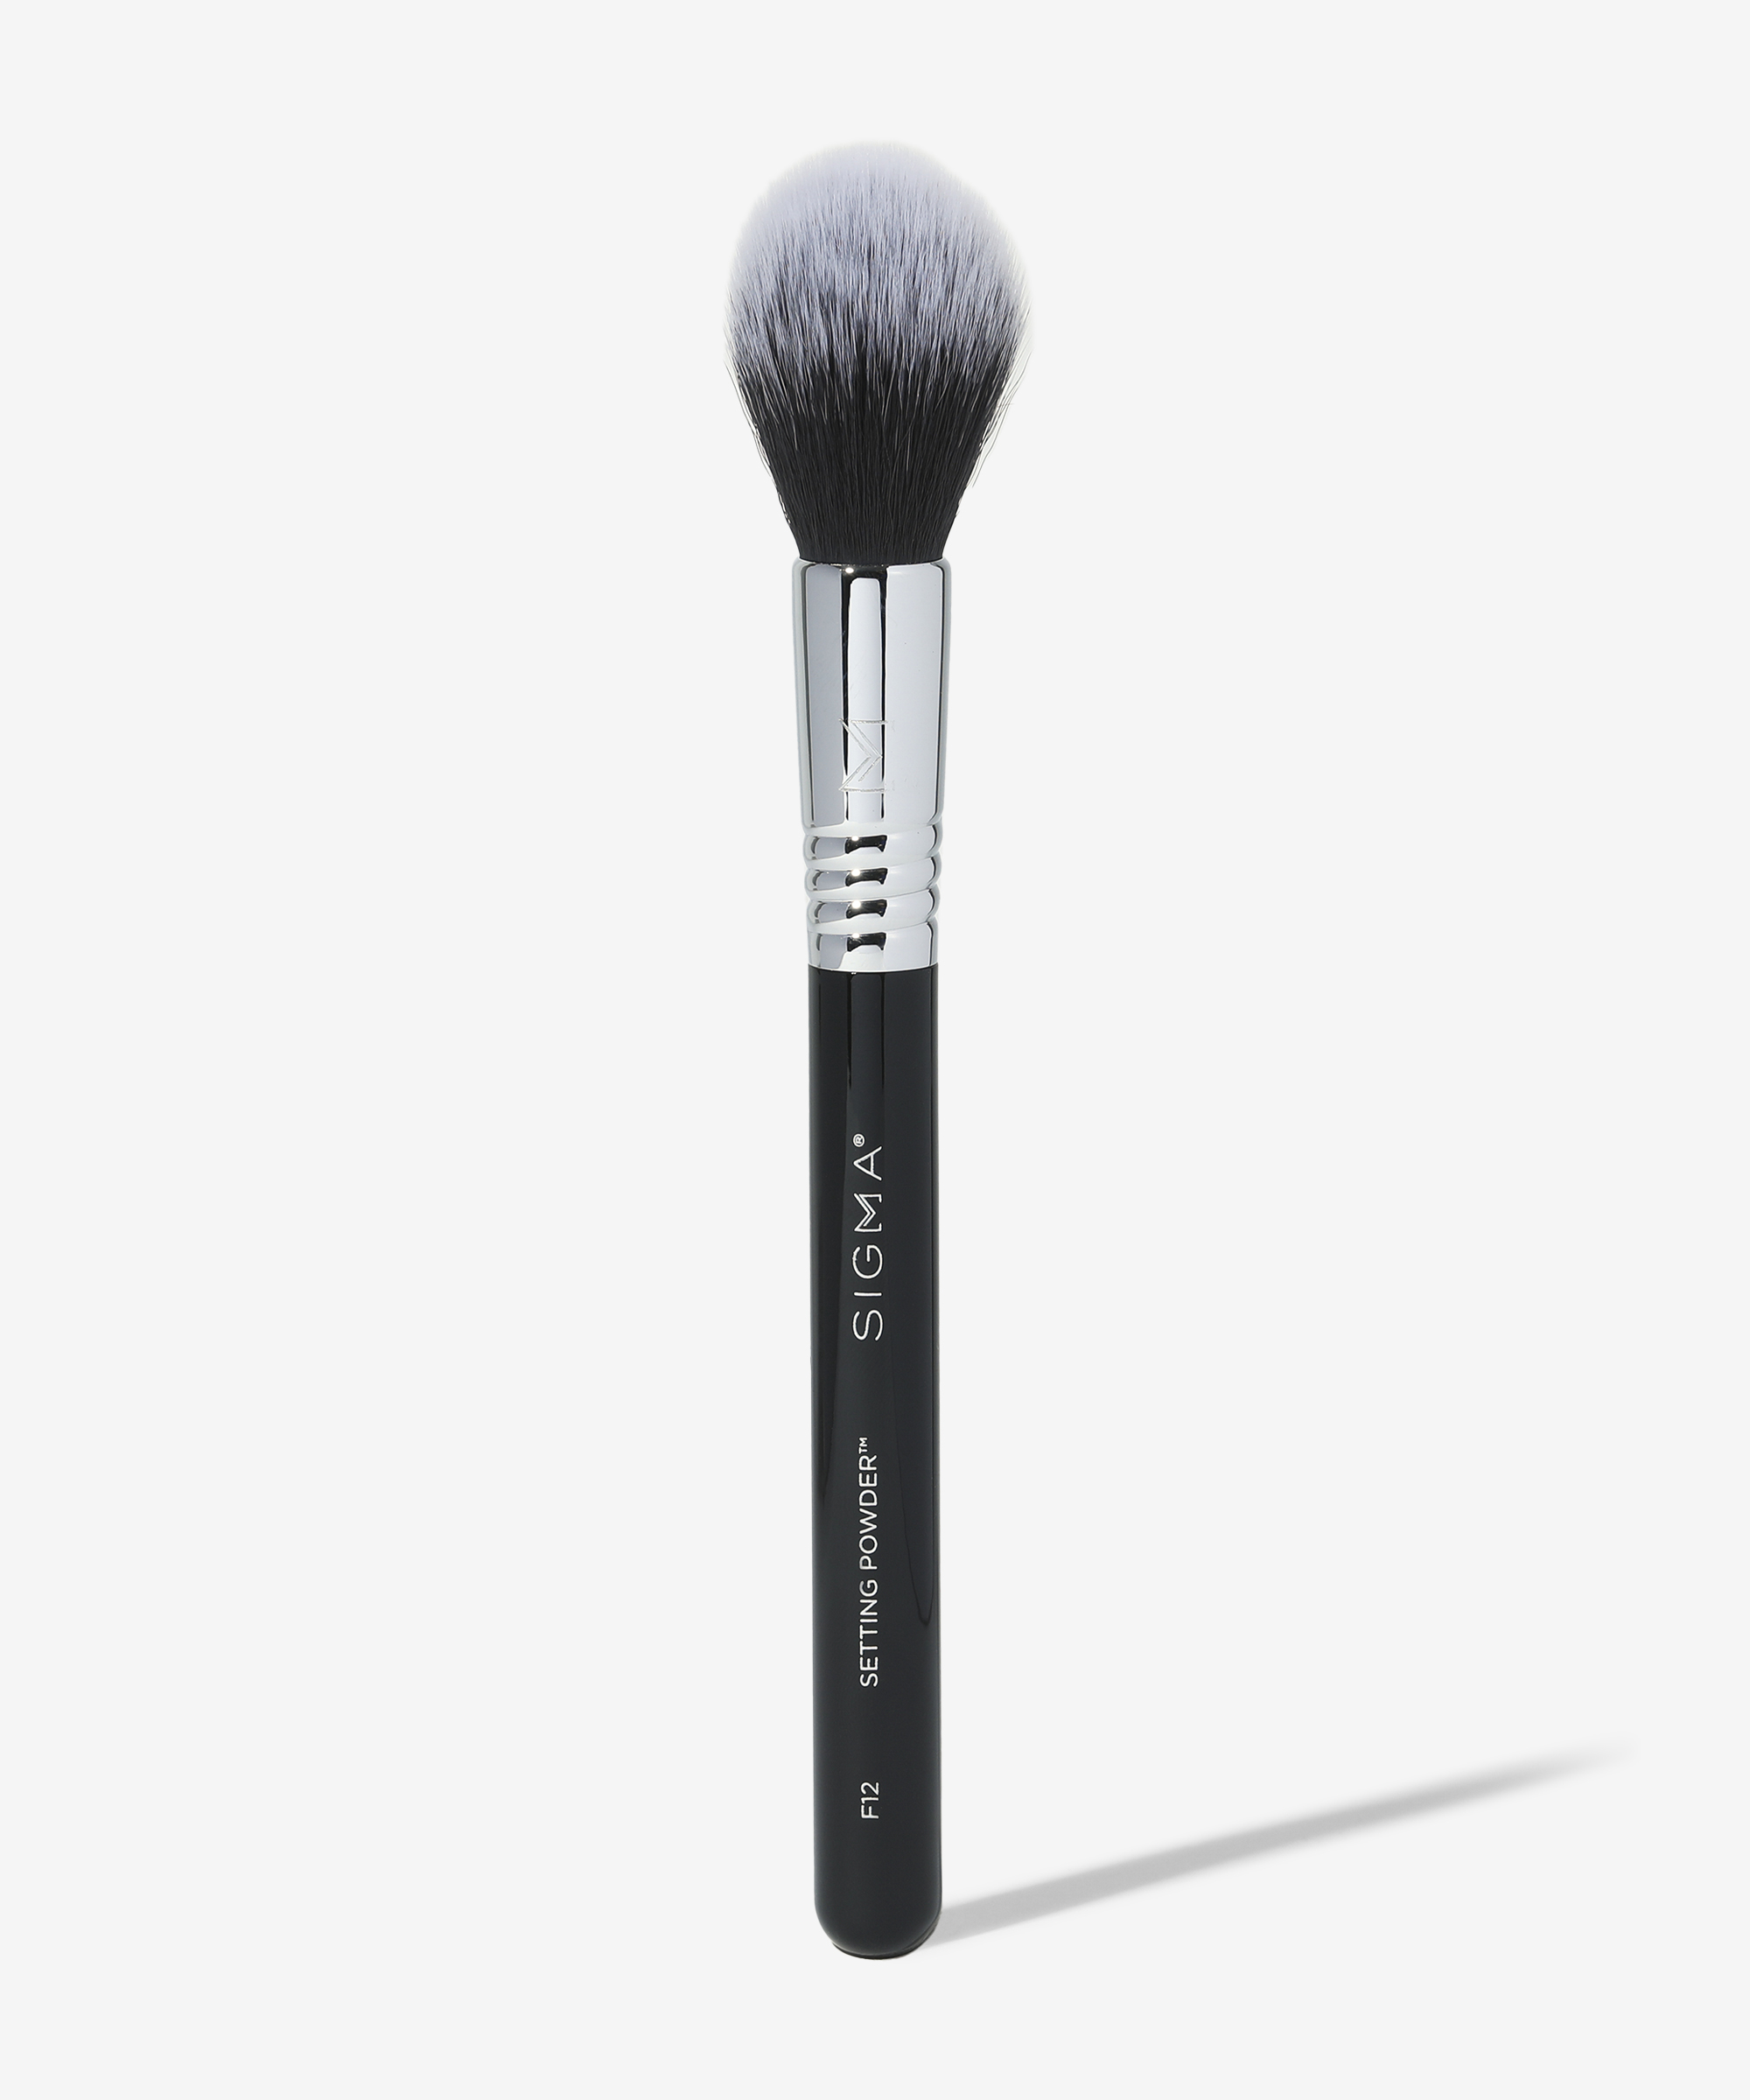 Sigma Beauty F12 Setting Powder Brush